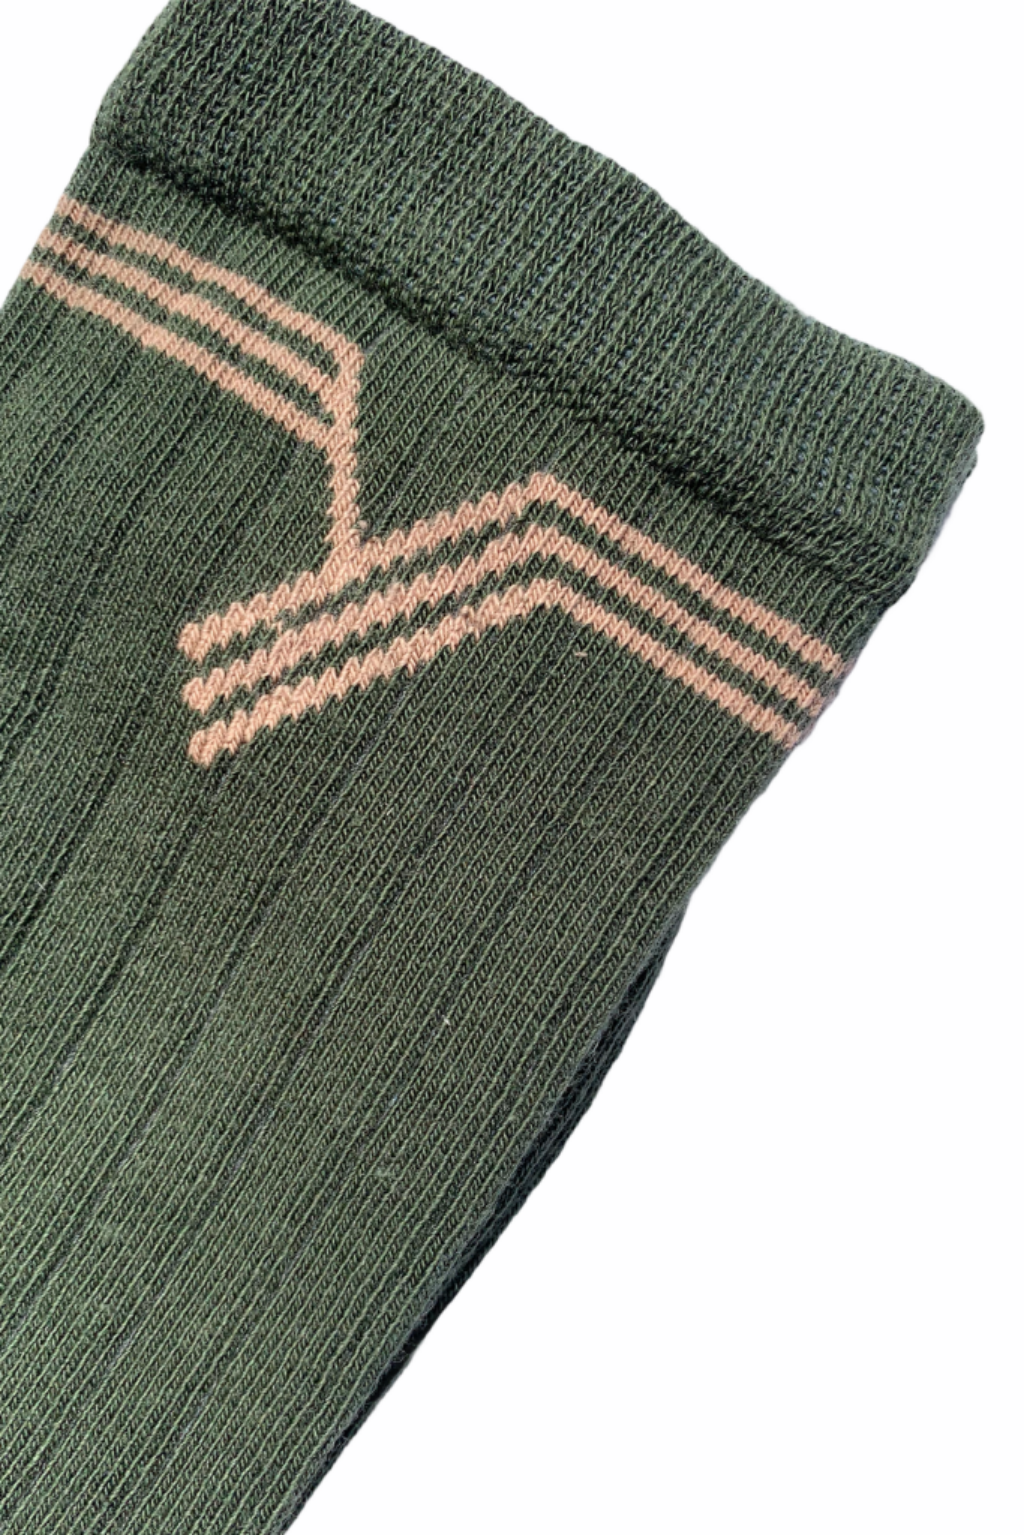 Chaussette française à côte en coton bio fabriquées en France de couleur vert mystère